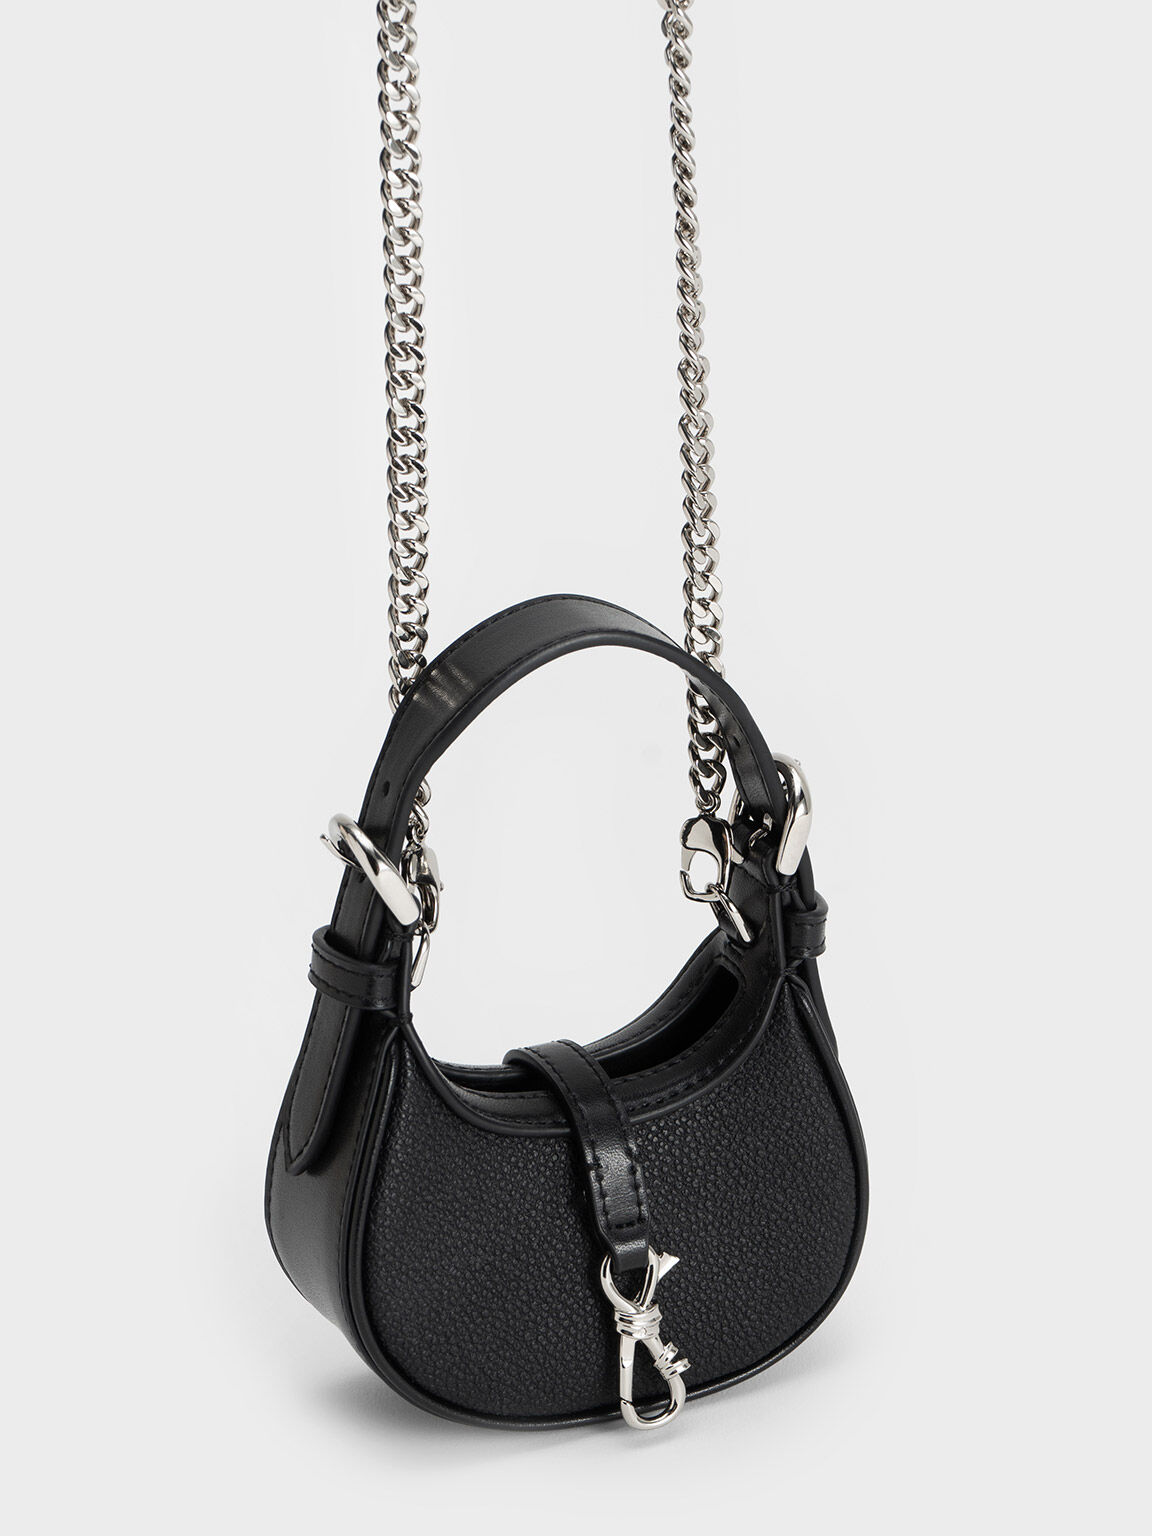 Dior Saddle Micro Bag in Metallic